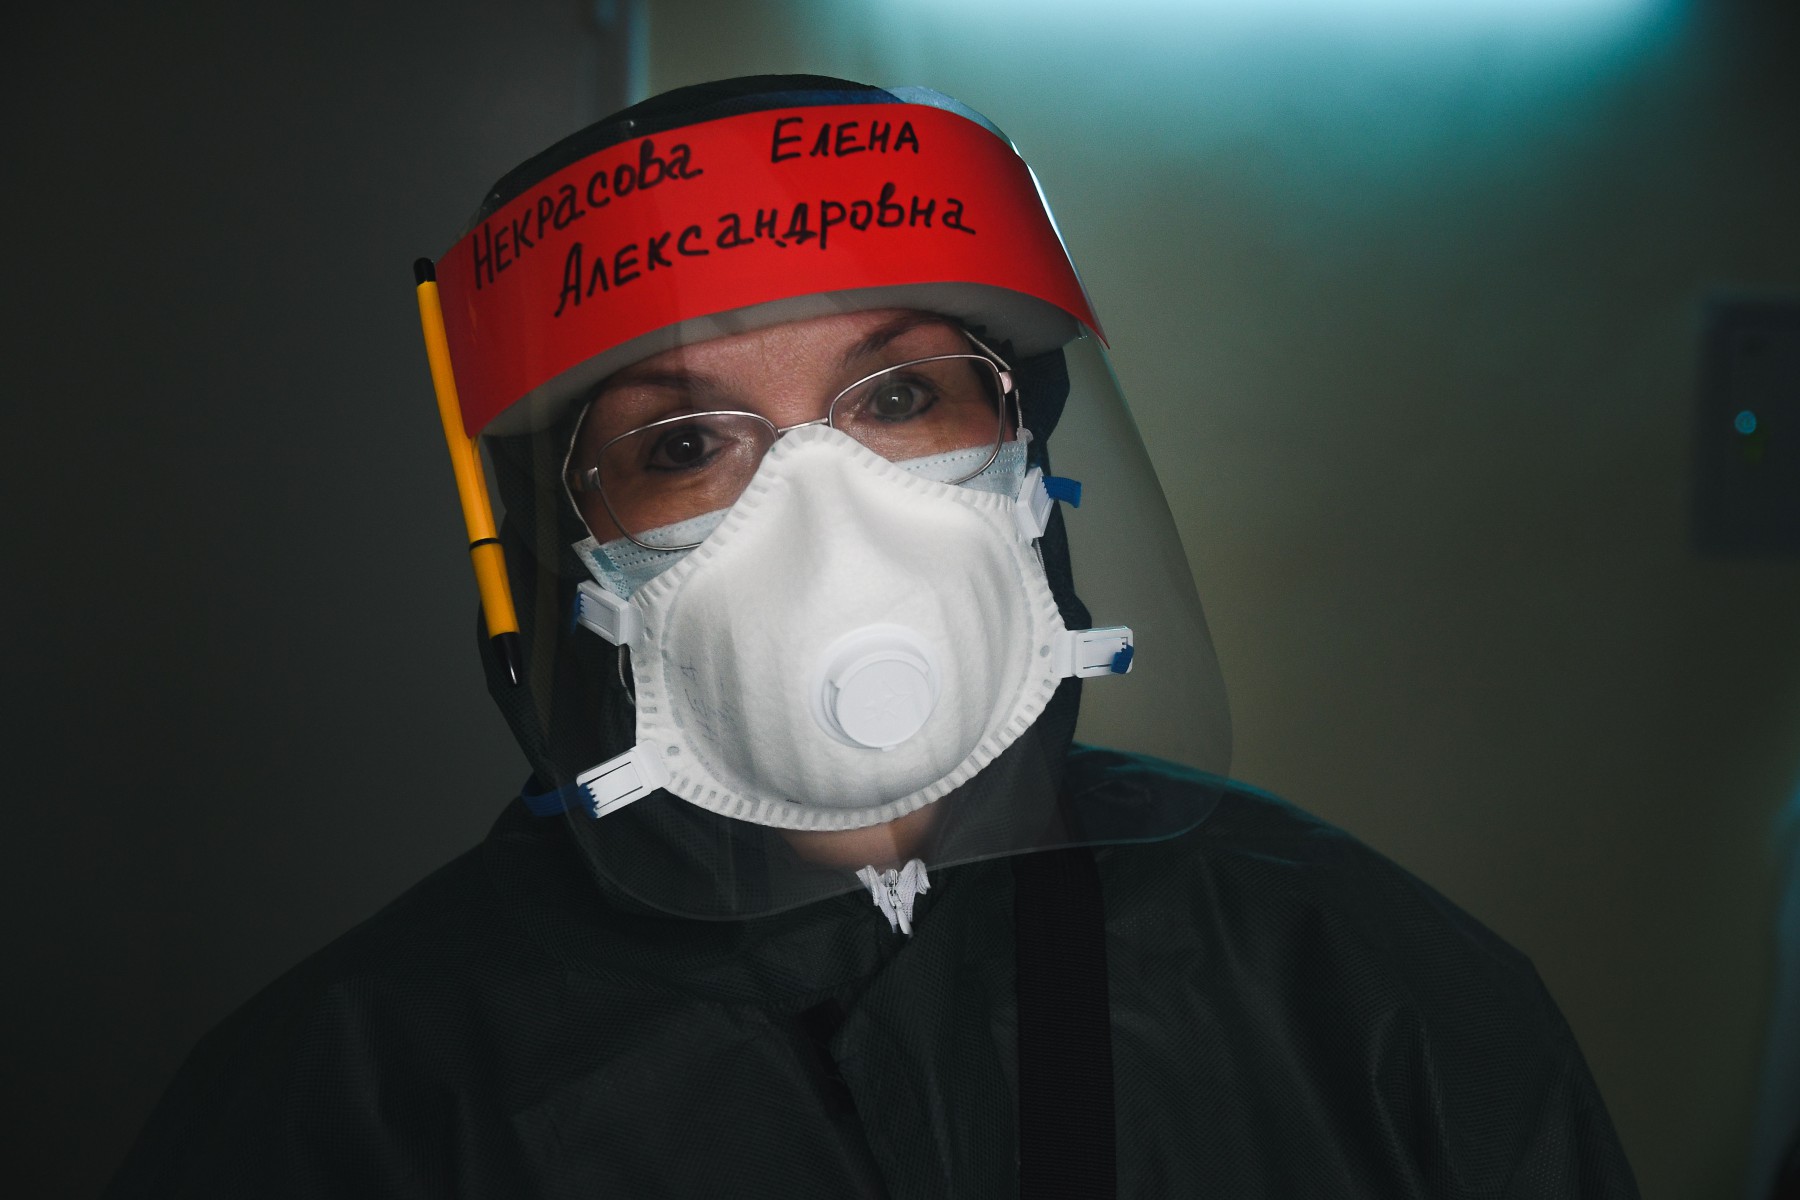 Заведующая отделением реанимации Елена Некрасова сама летом переболела коронавирусом и до сих пор ощущает последствия. Но продолжает работать. Фото из архива редакции